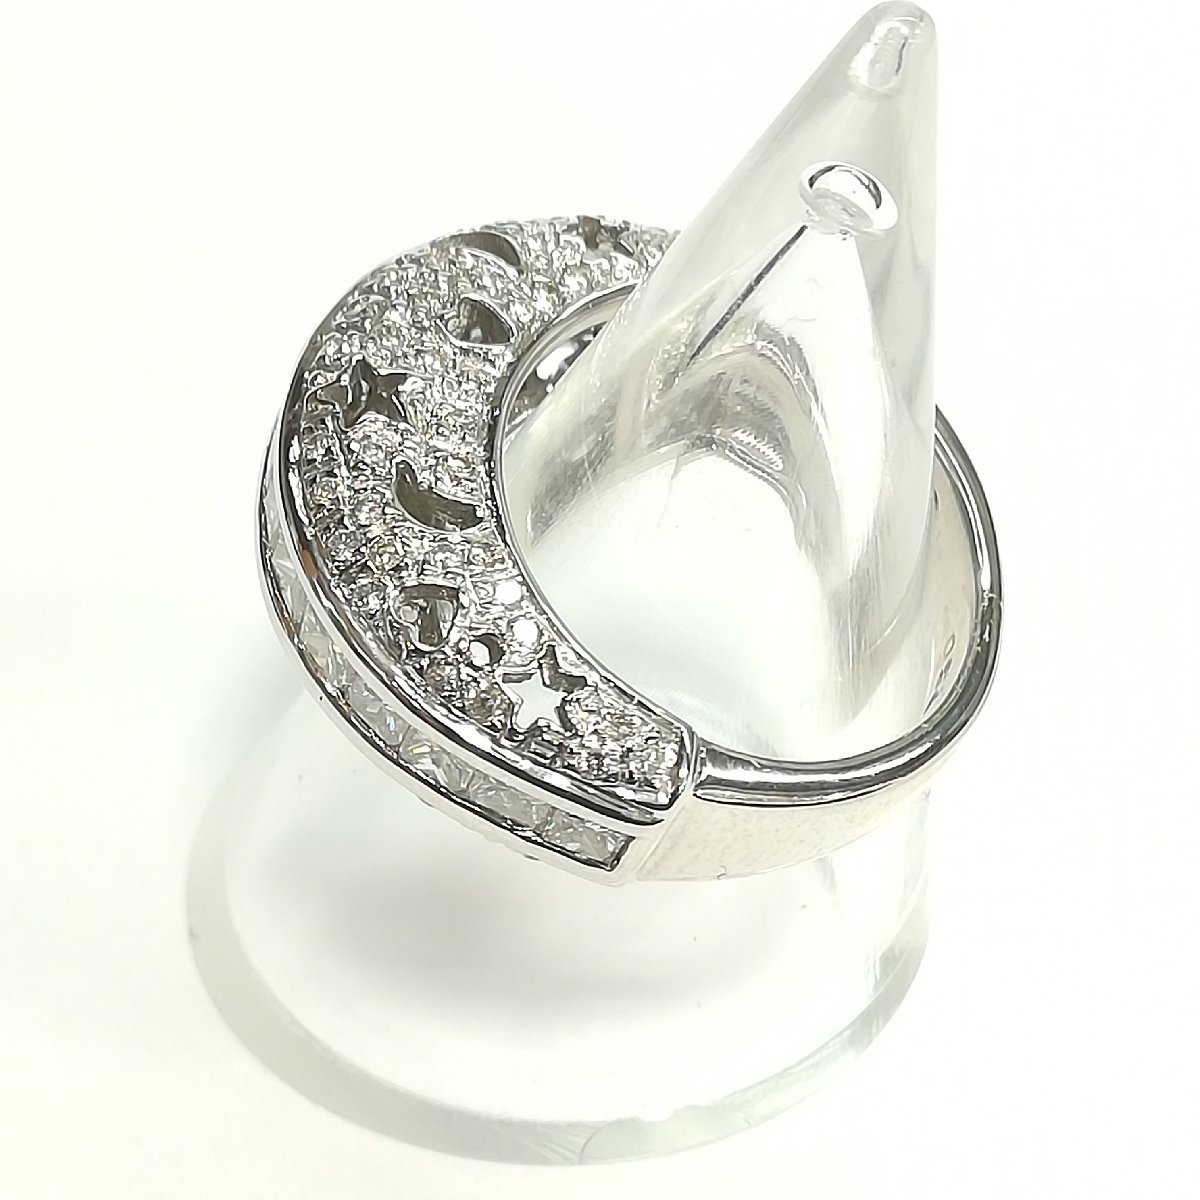 質屋出品【リング】K18 ホワイトゴールド ダイヤモンド 1.20ct デザイン 10.5号 指輪 中古_画像2